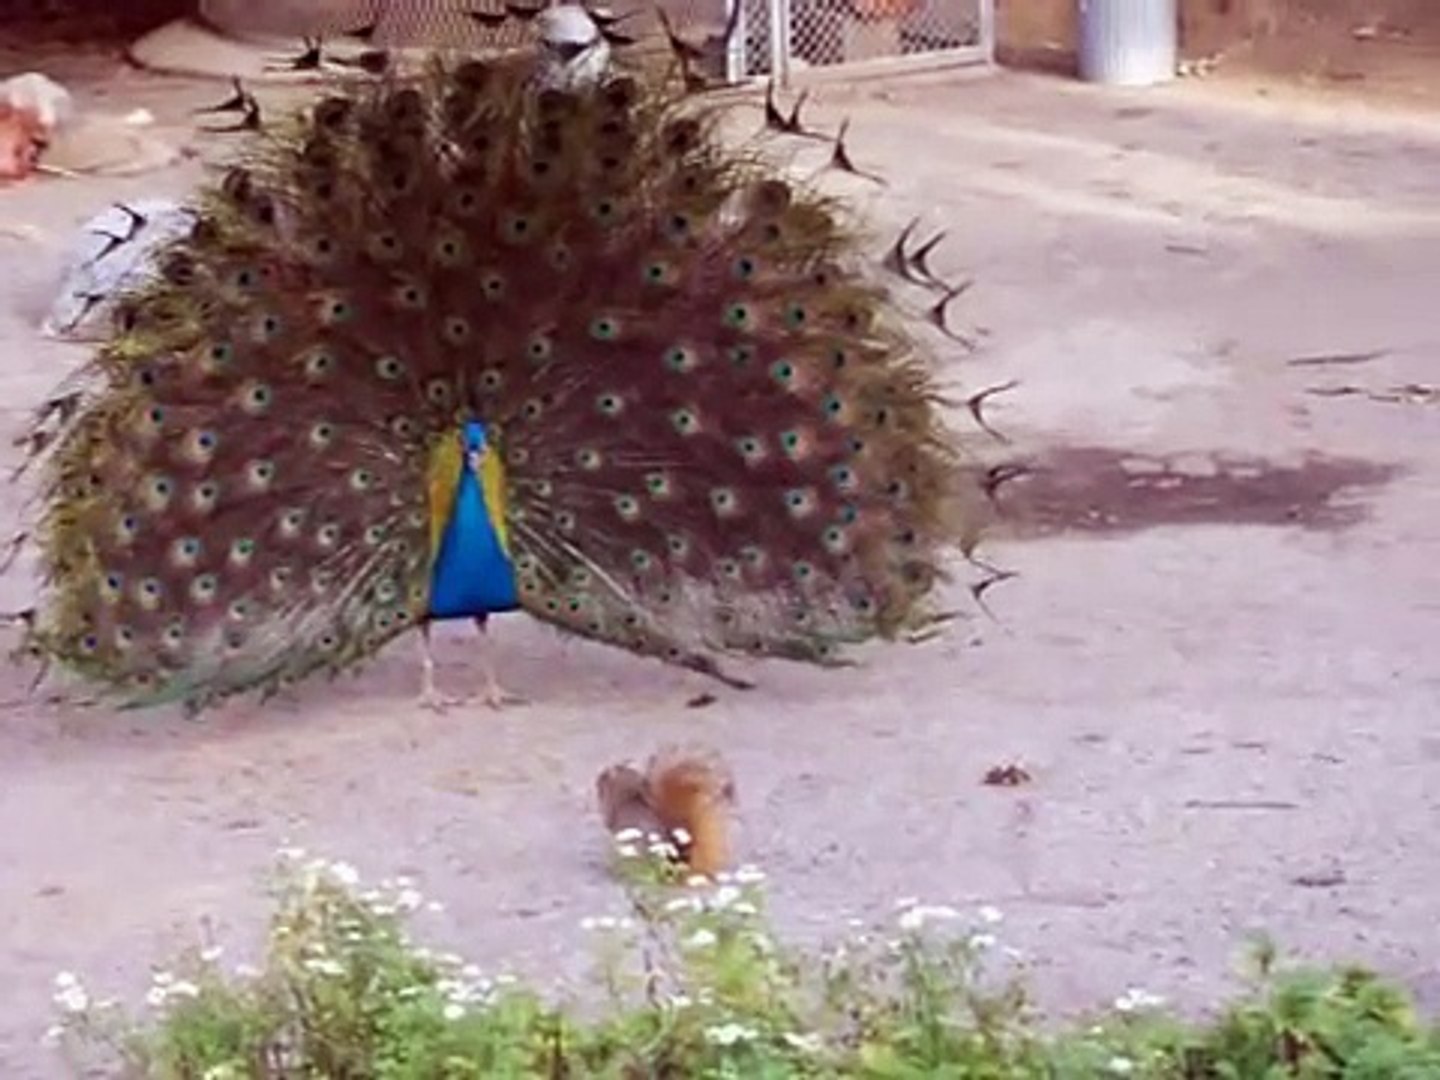 Peacock vs. Squirrel 1